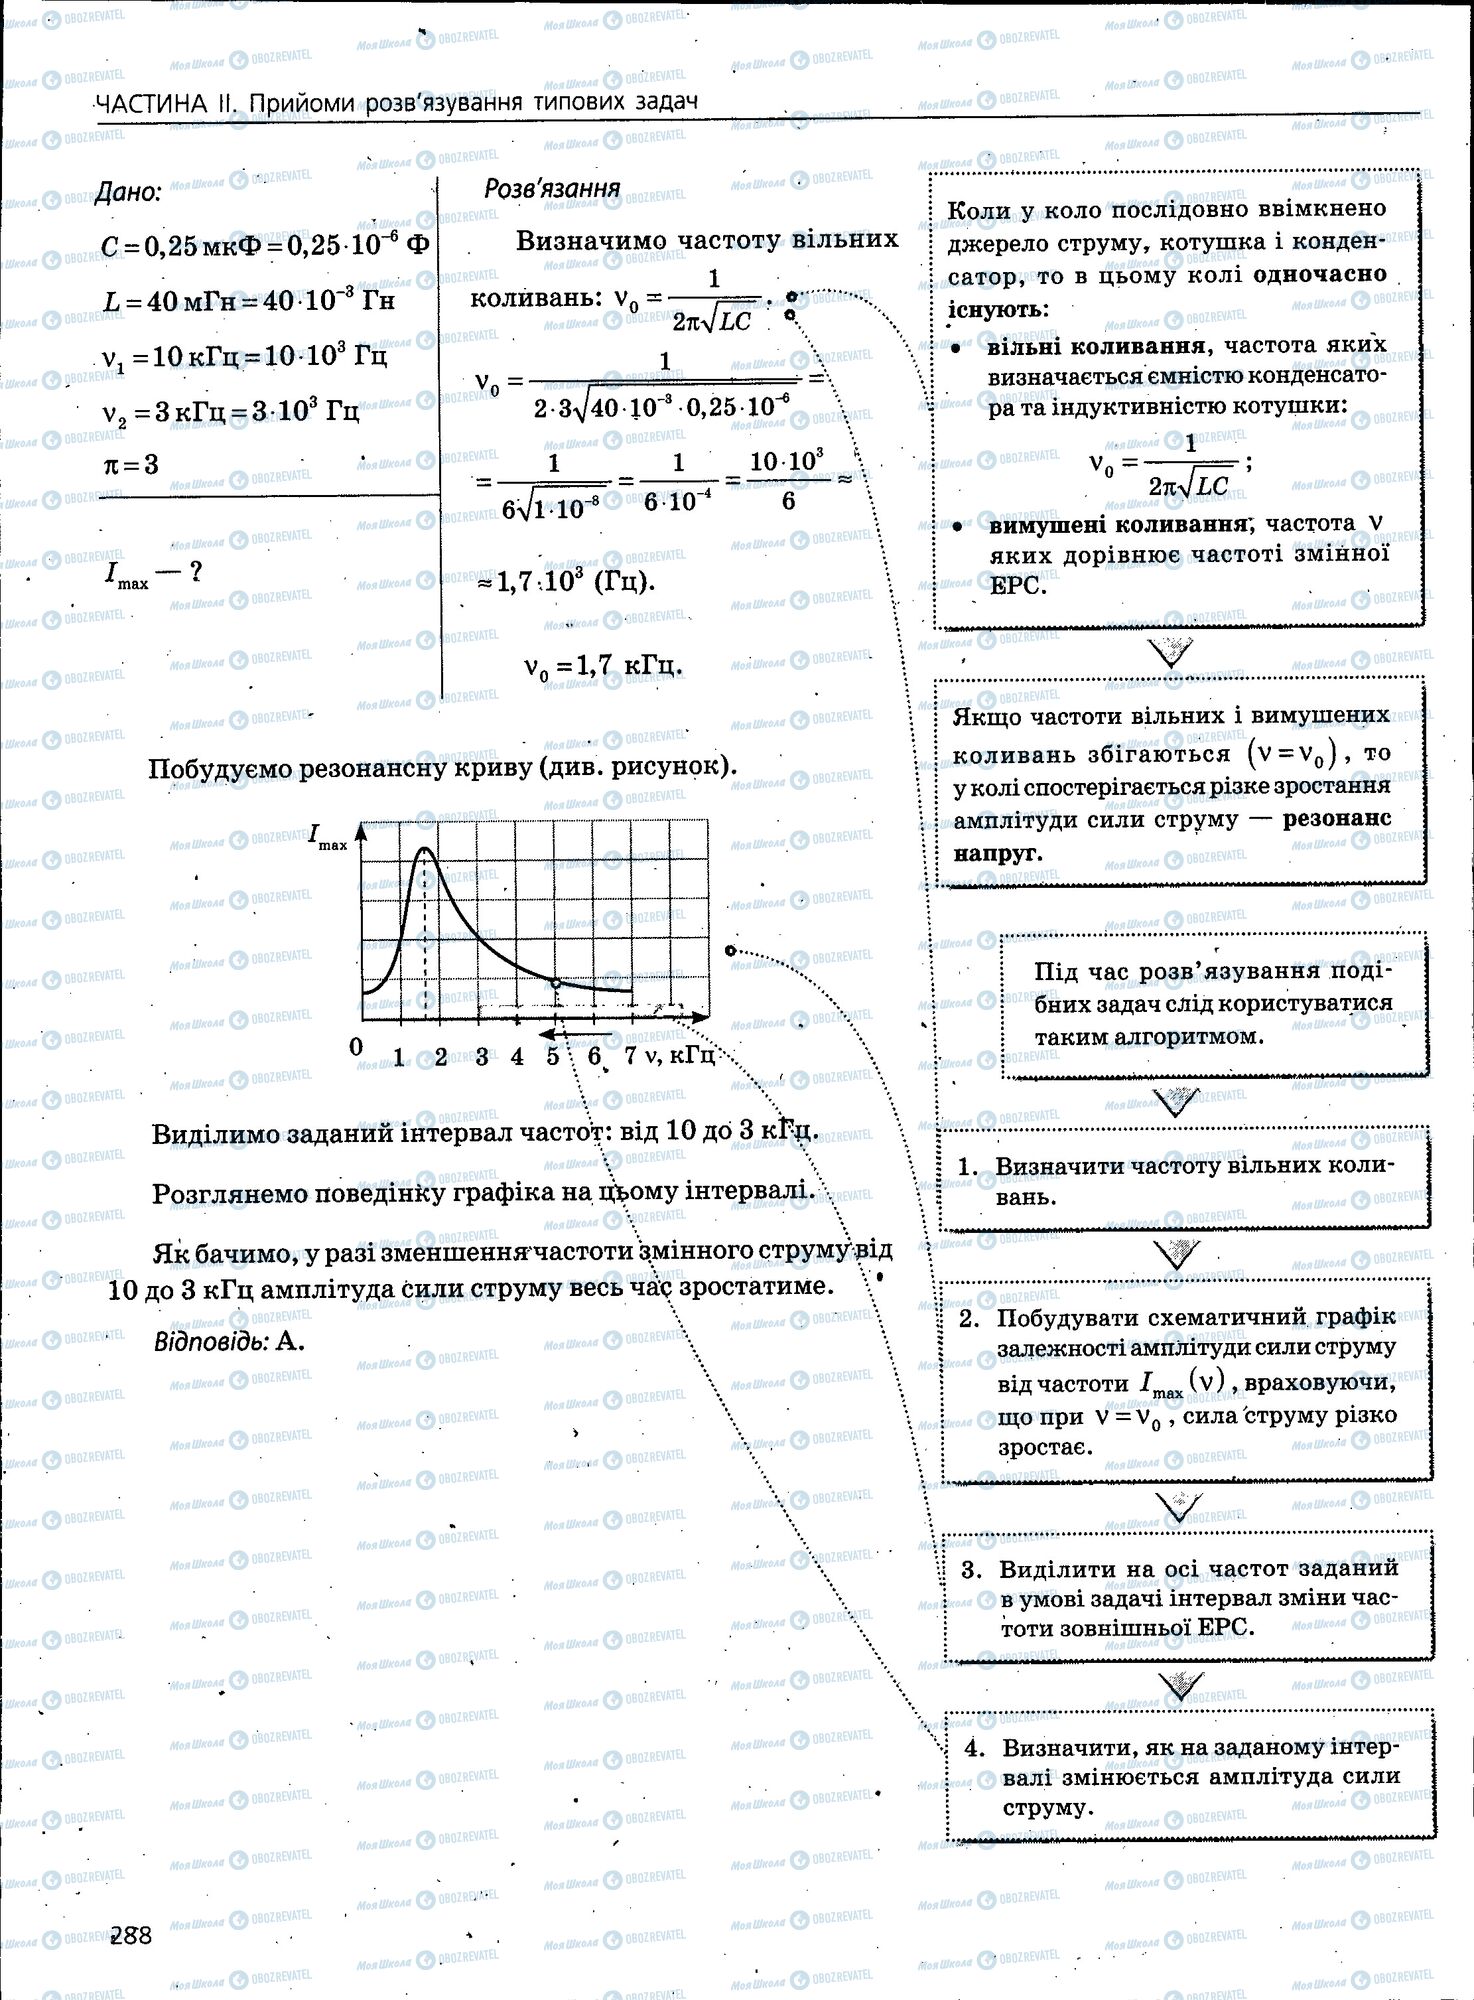 ЗНО Физика 11 класс страница 288